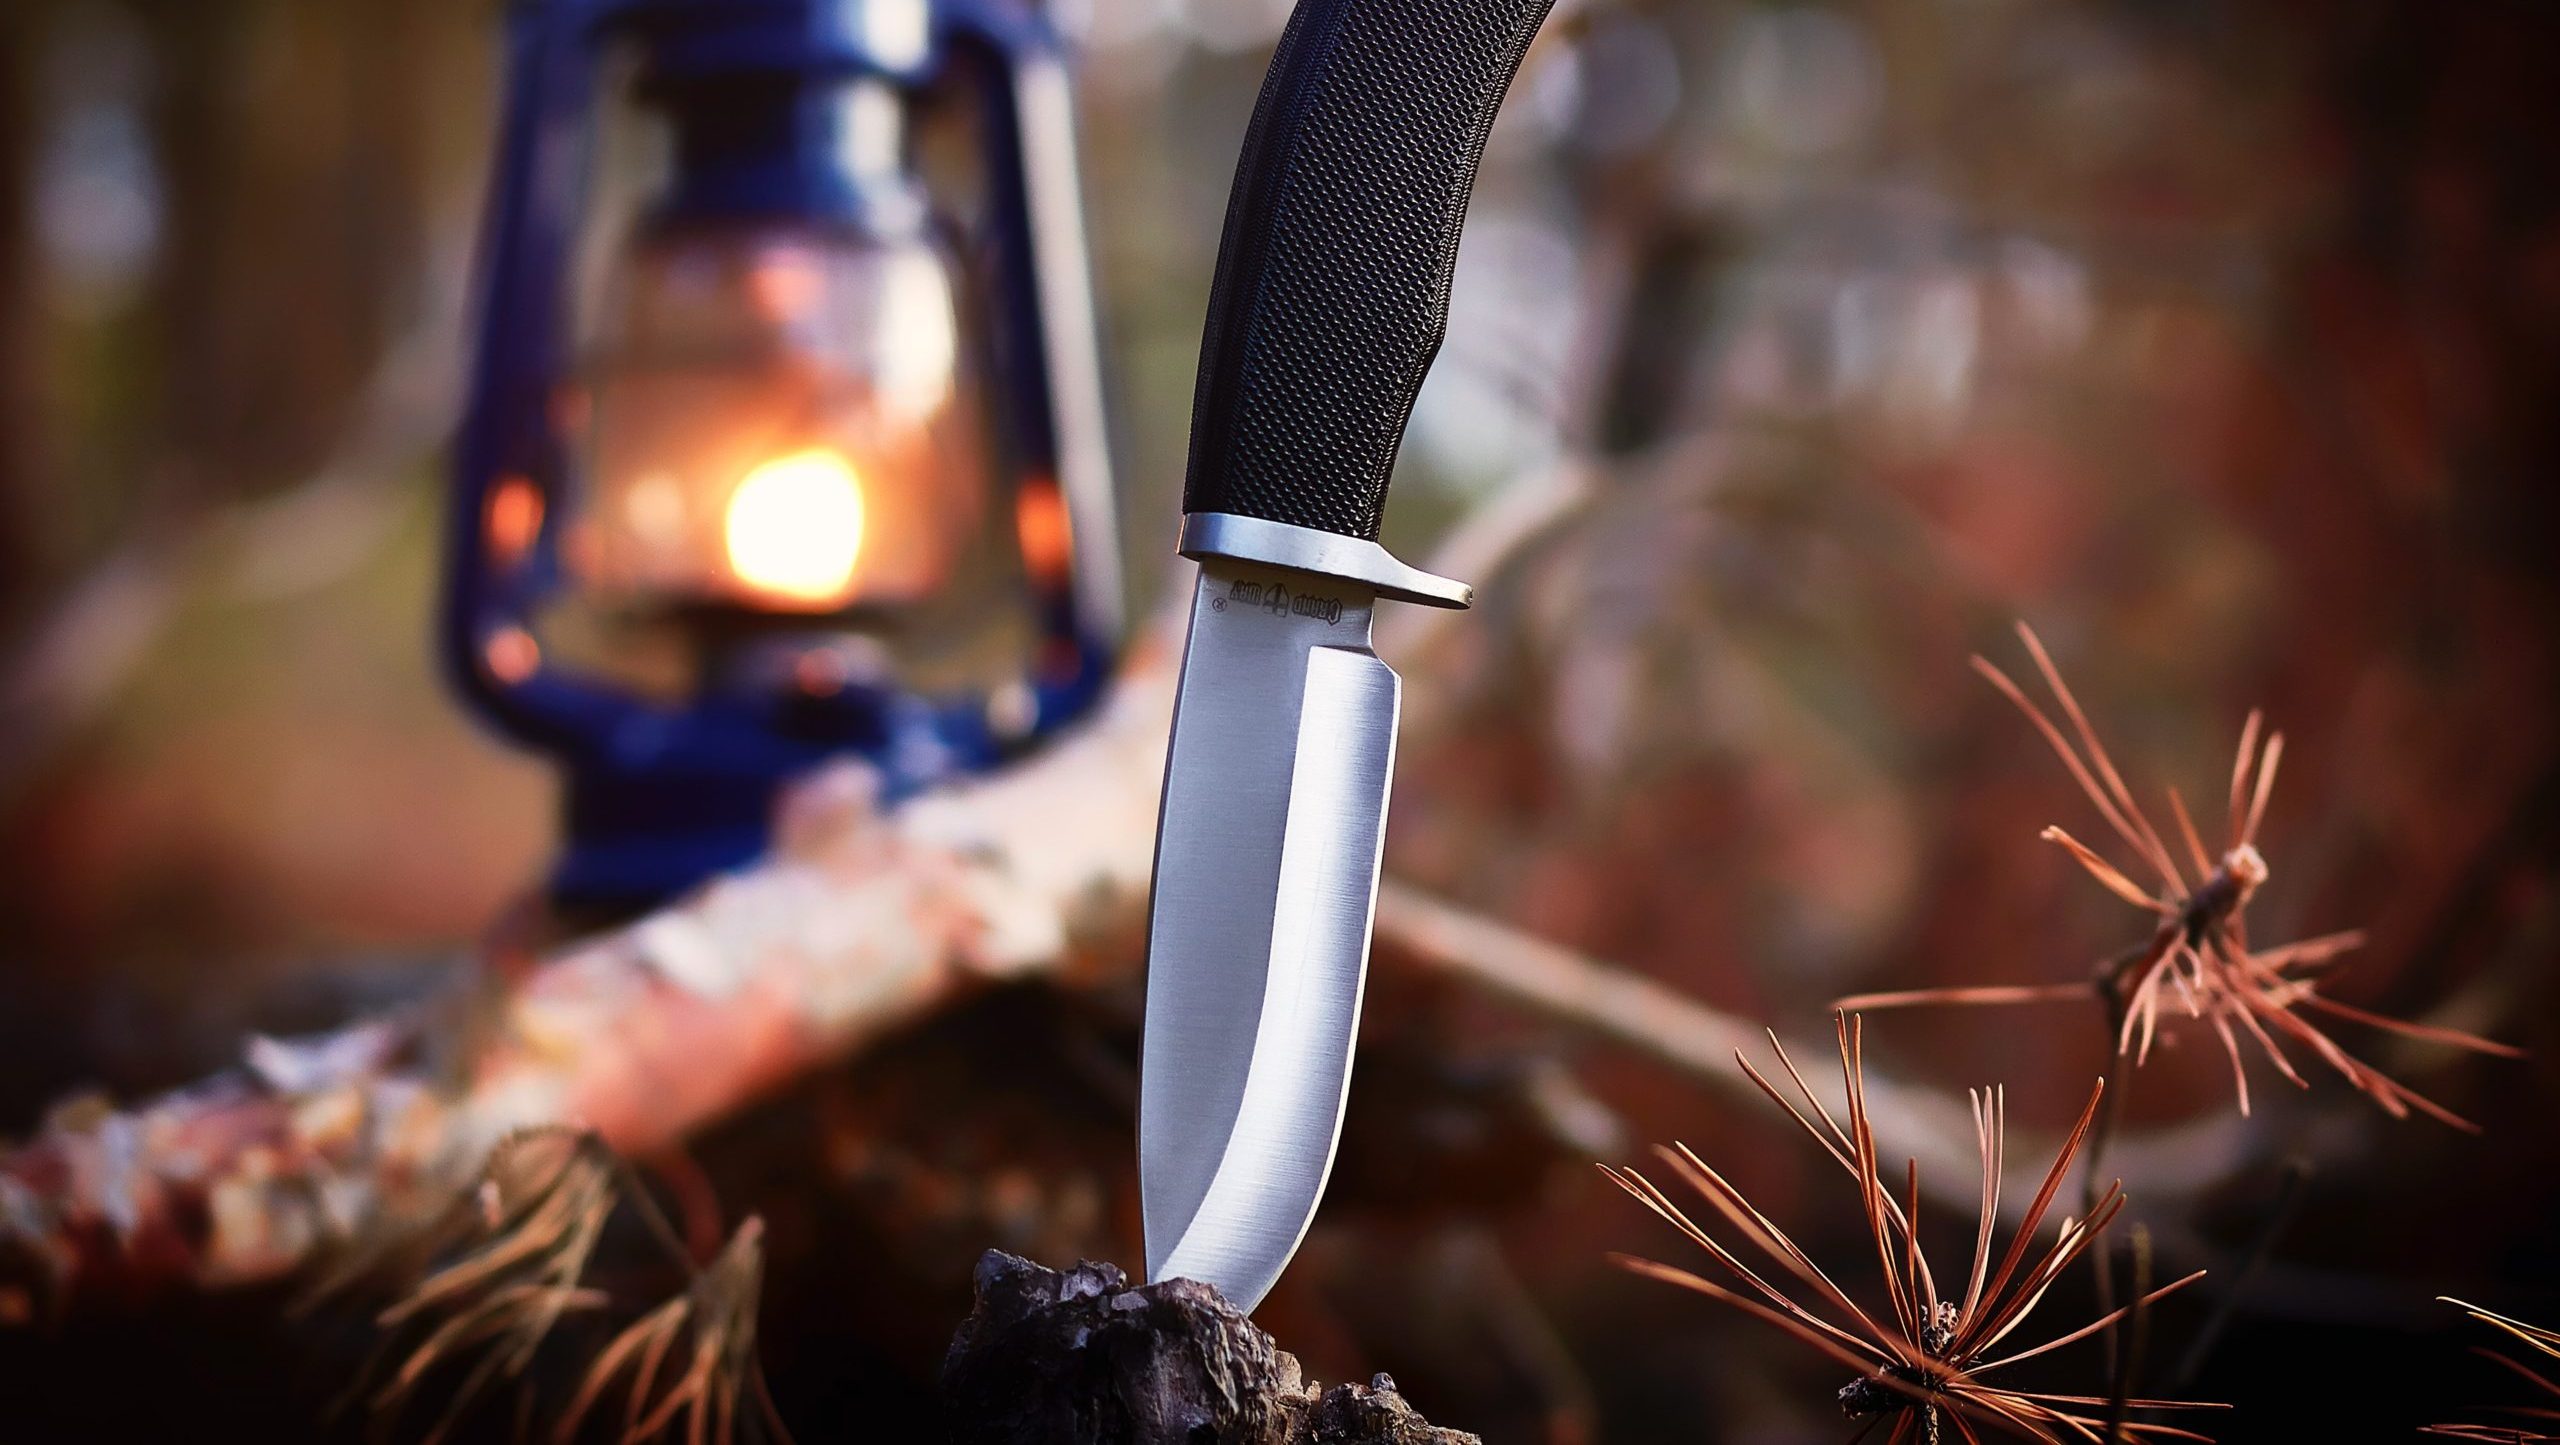 K720 steel knife with lantern in backdrop.